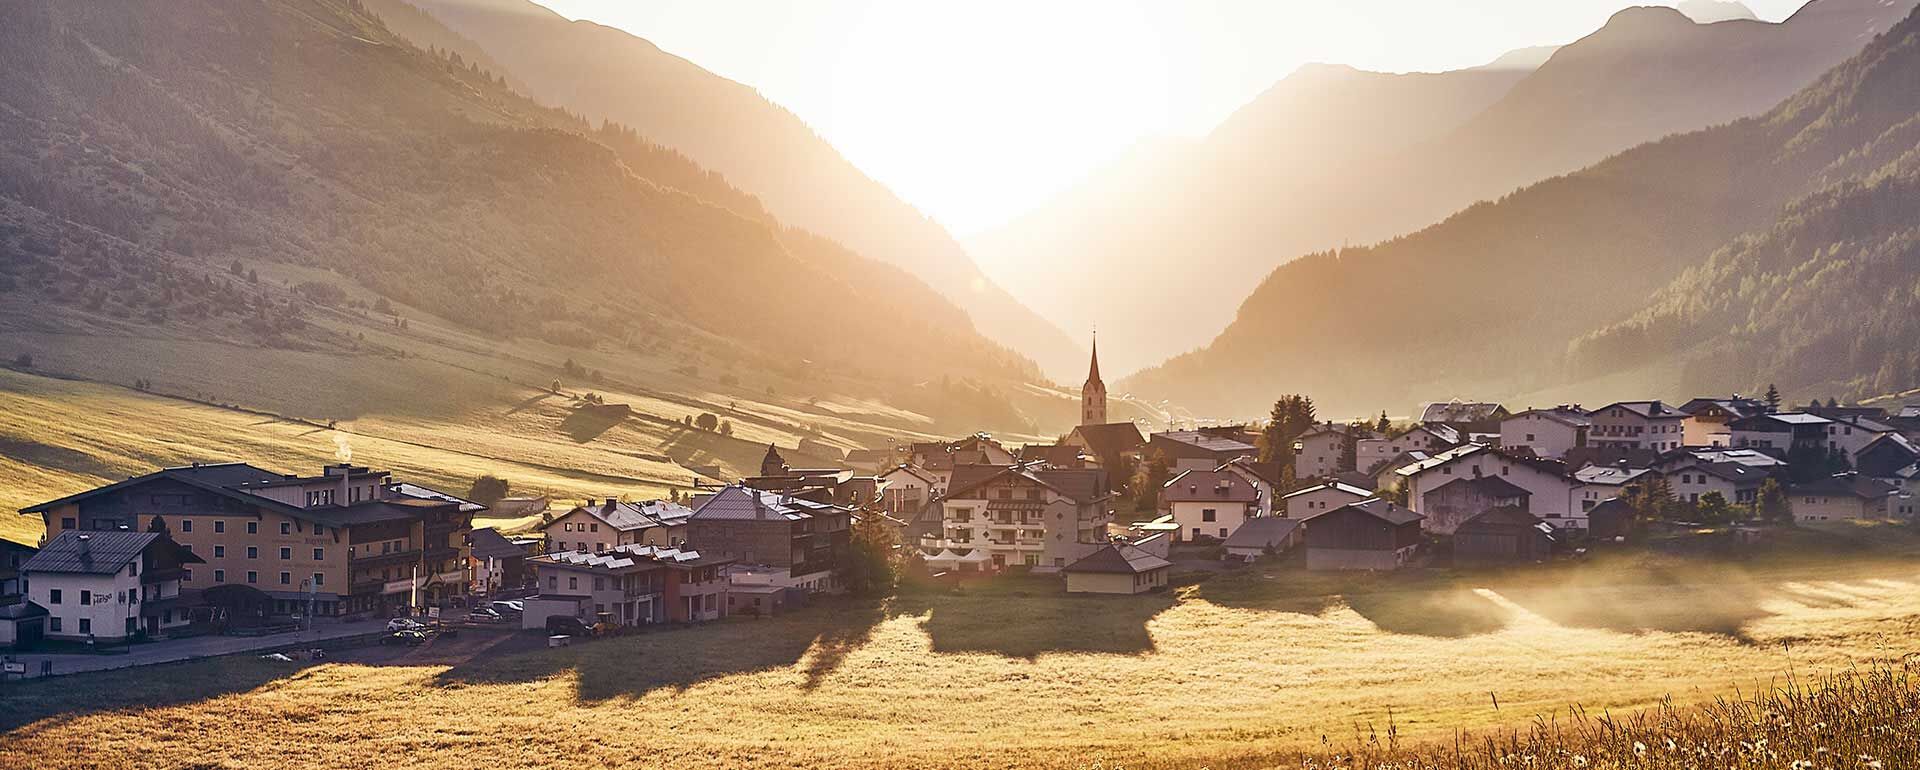 Sommerurlaub Galtür Erster Luftkurort in Tirol